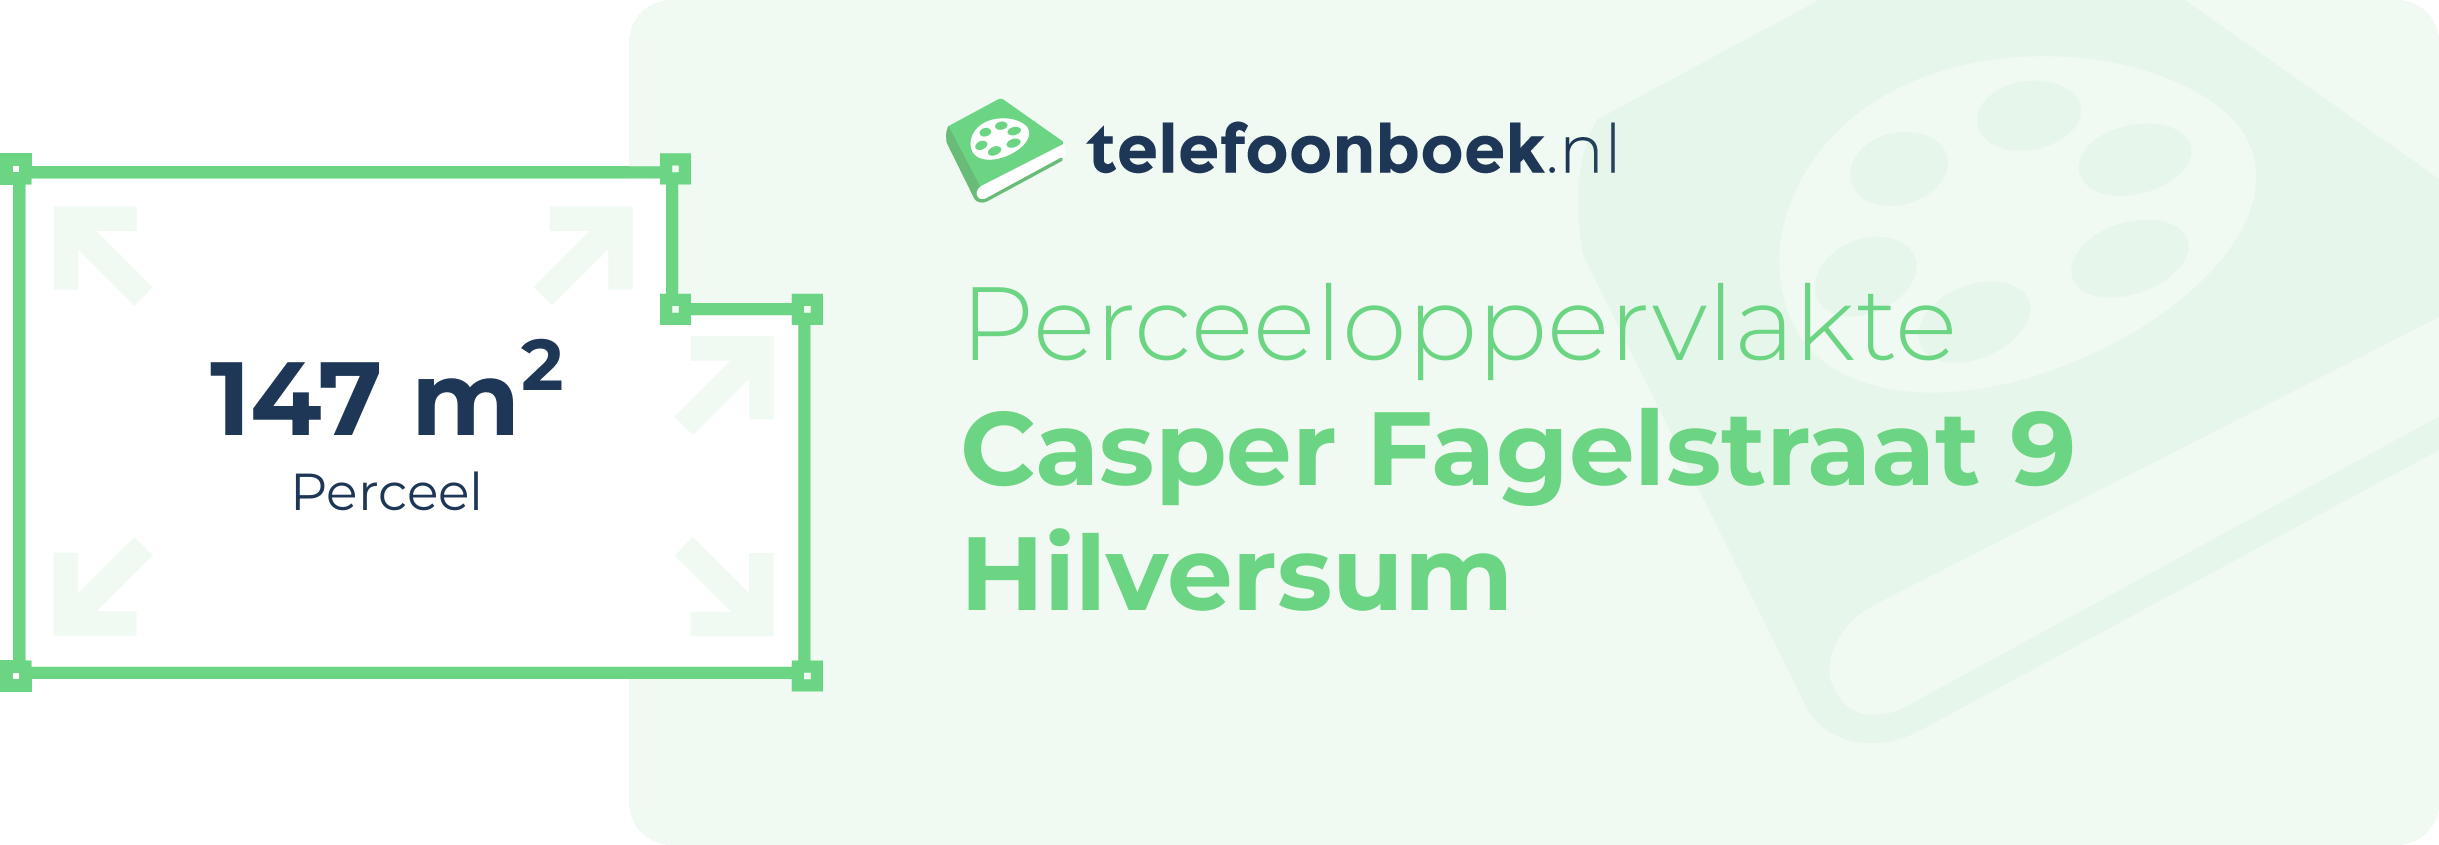 Perceeloppervlakte Casper Fagelstraat 9 Hilversum